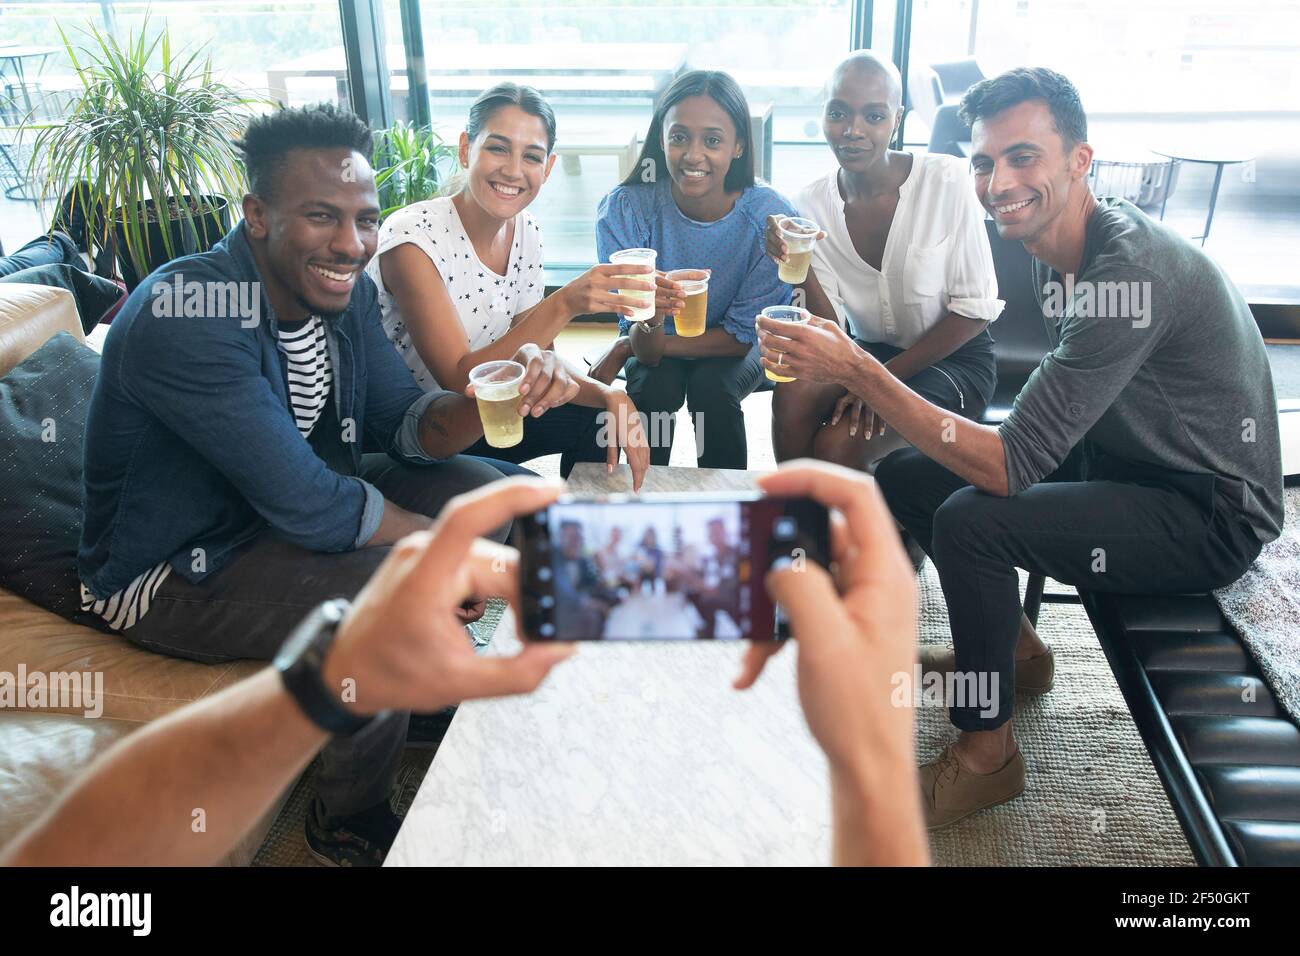 Uomo POV con smartphone fotografando amici bere birre Foto Stock